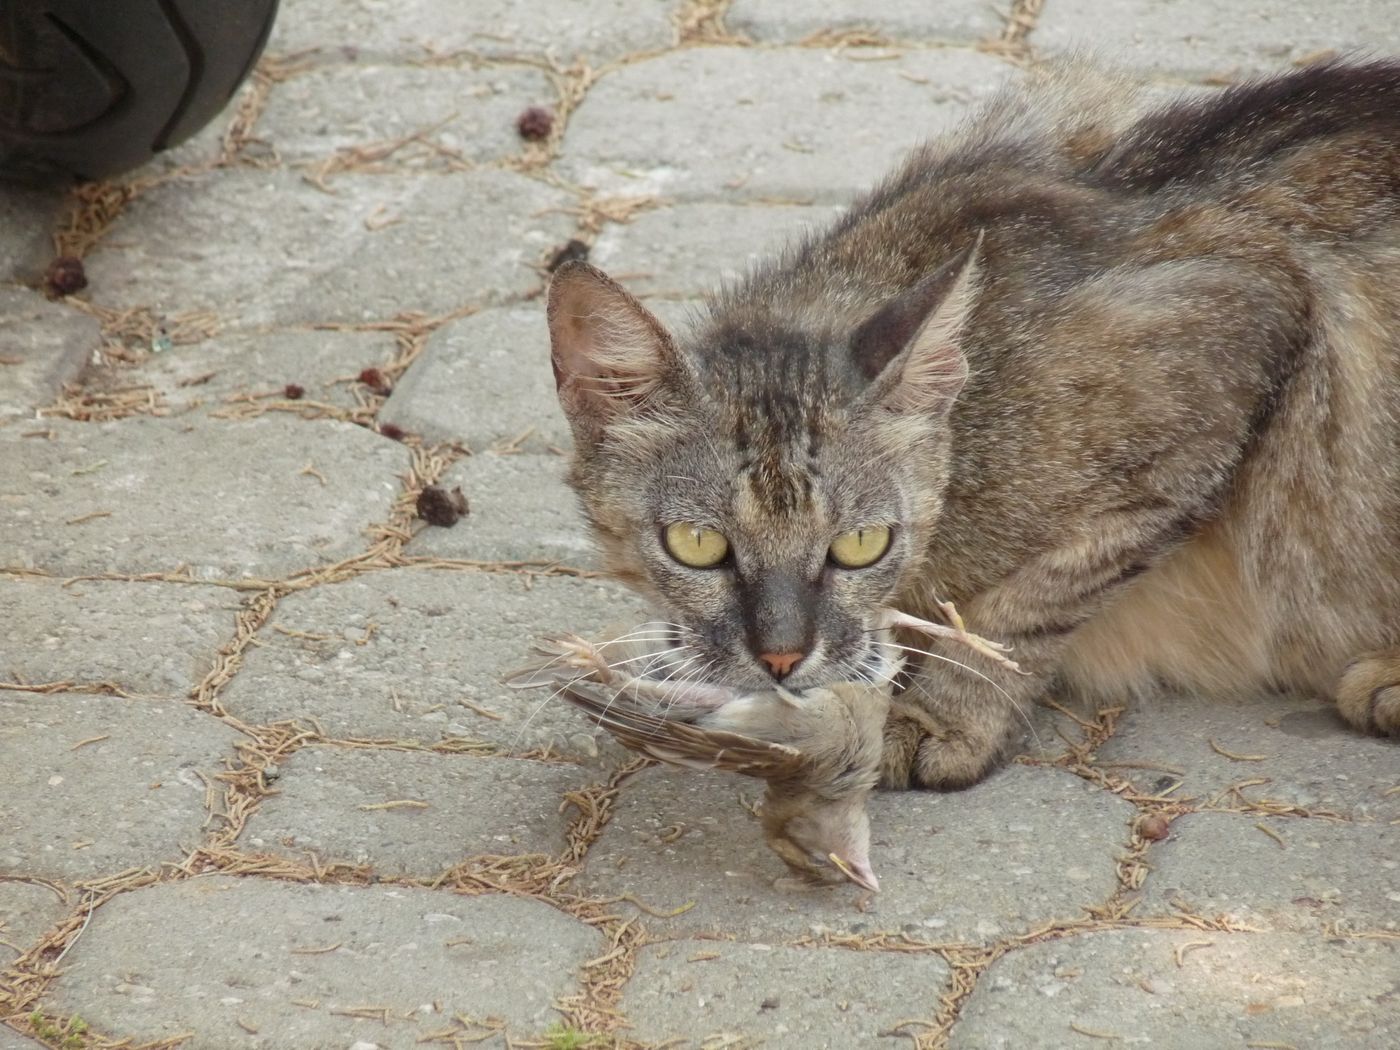 A feral cat carrying a bird carcass.